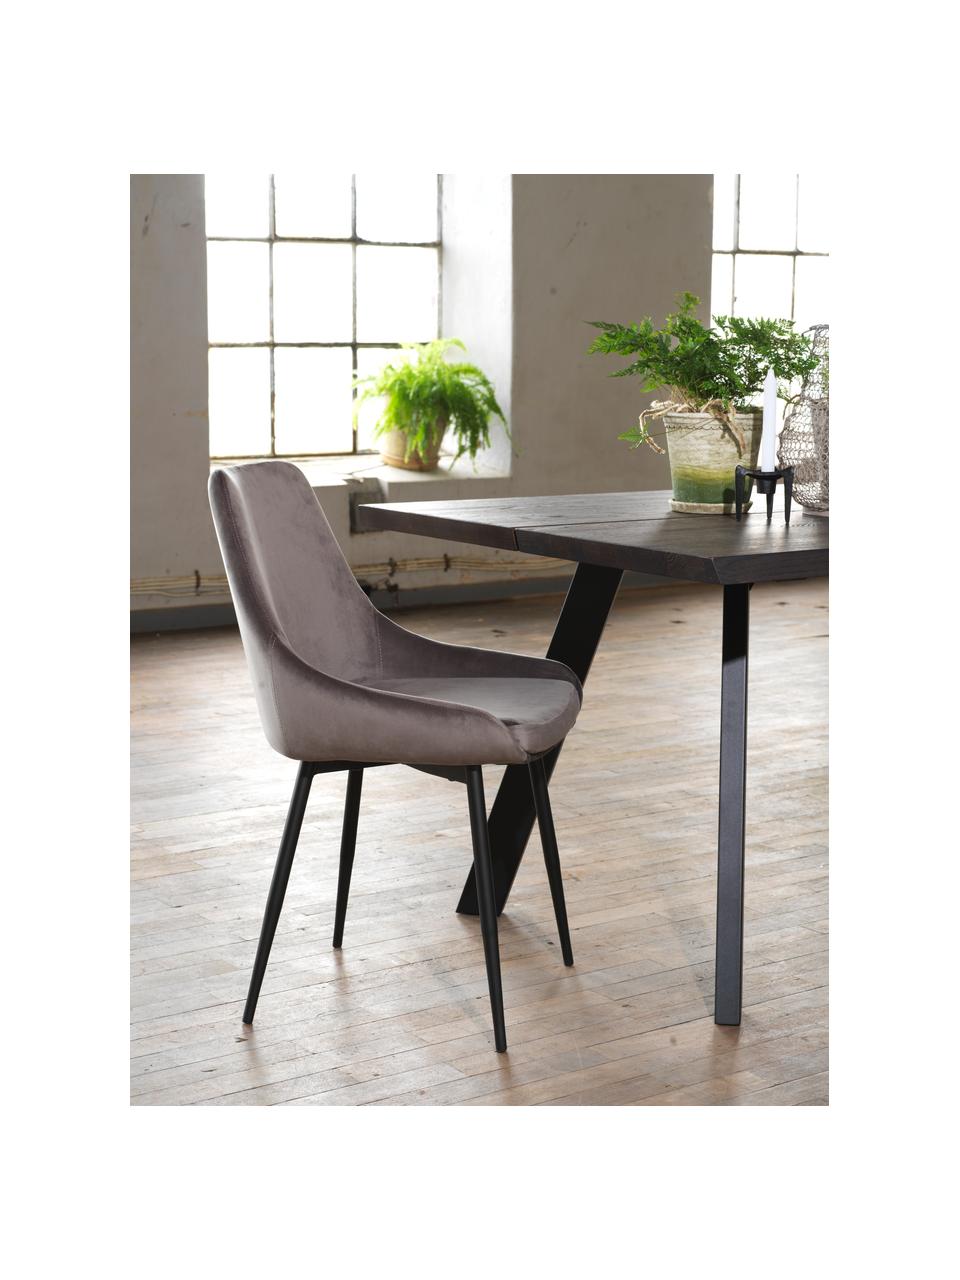 Fluwelen stoelen Sierra, 2 stuks, Bekleding: polyester fluweel, Poten: gelakt metaal, Fluweel grijs, zwart, B 49 x D 55 cm